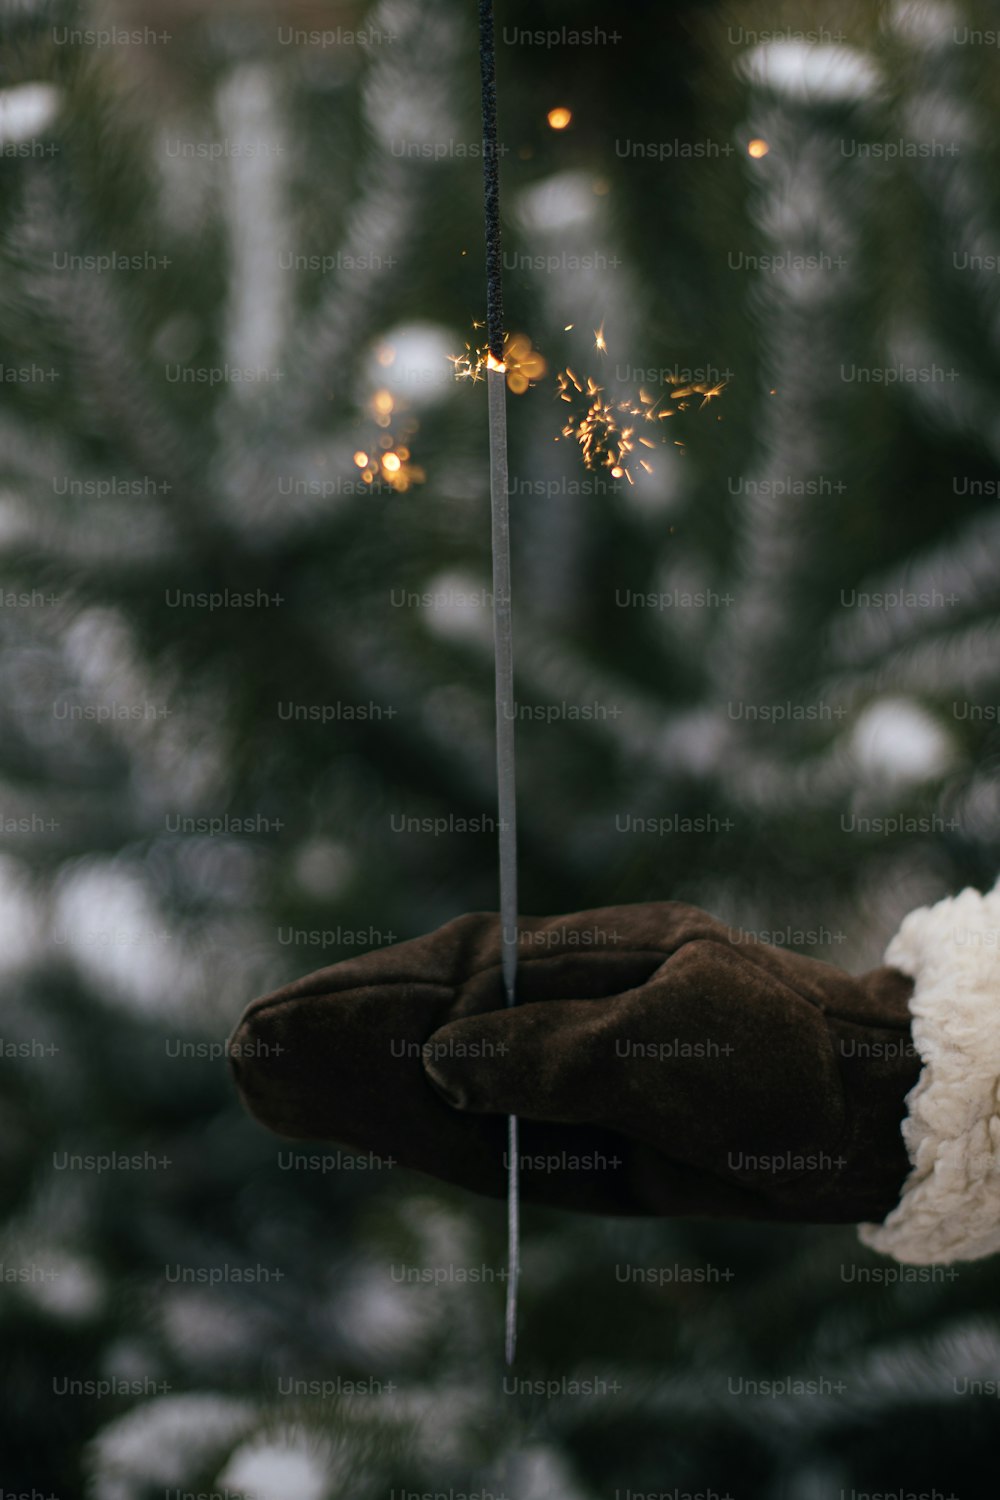 Bonne Année!  Femme main dans une mitaine élégante avec un feu d’artifice rougeoyant sur fond de branches de pin dans la neige le soir. Main tenant un cierge magique brûlant. Moment magique atmosphérique. Joyeuses Fêtes!